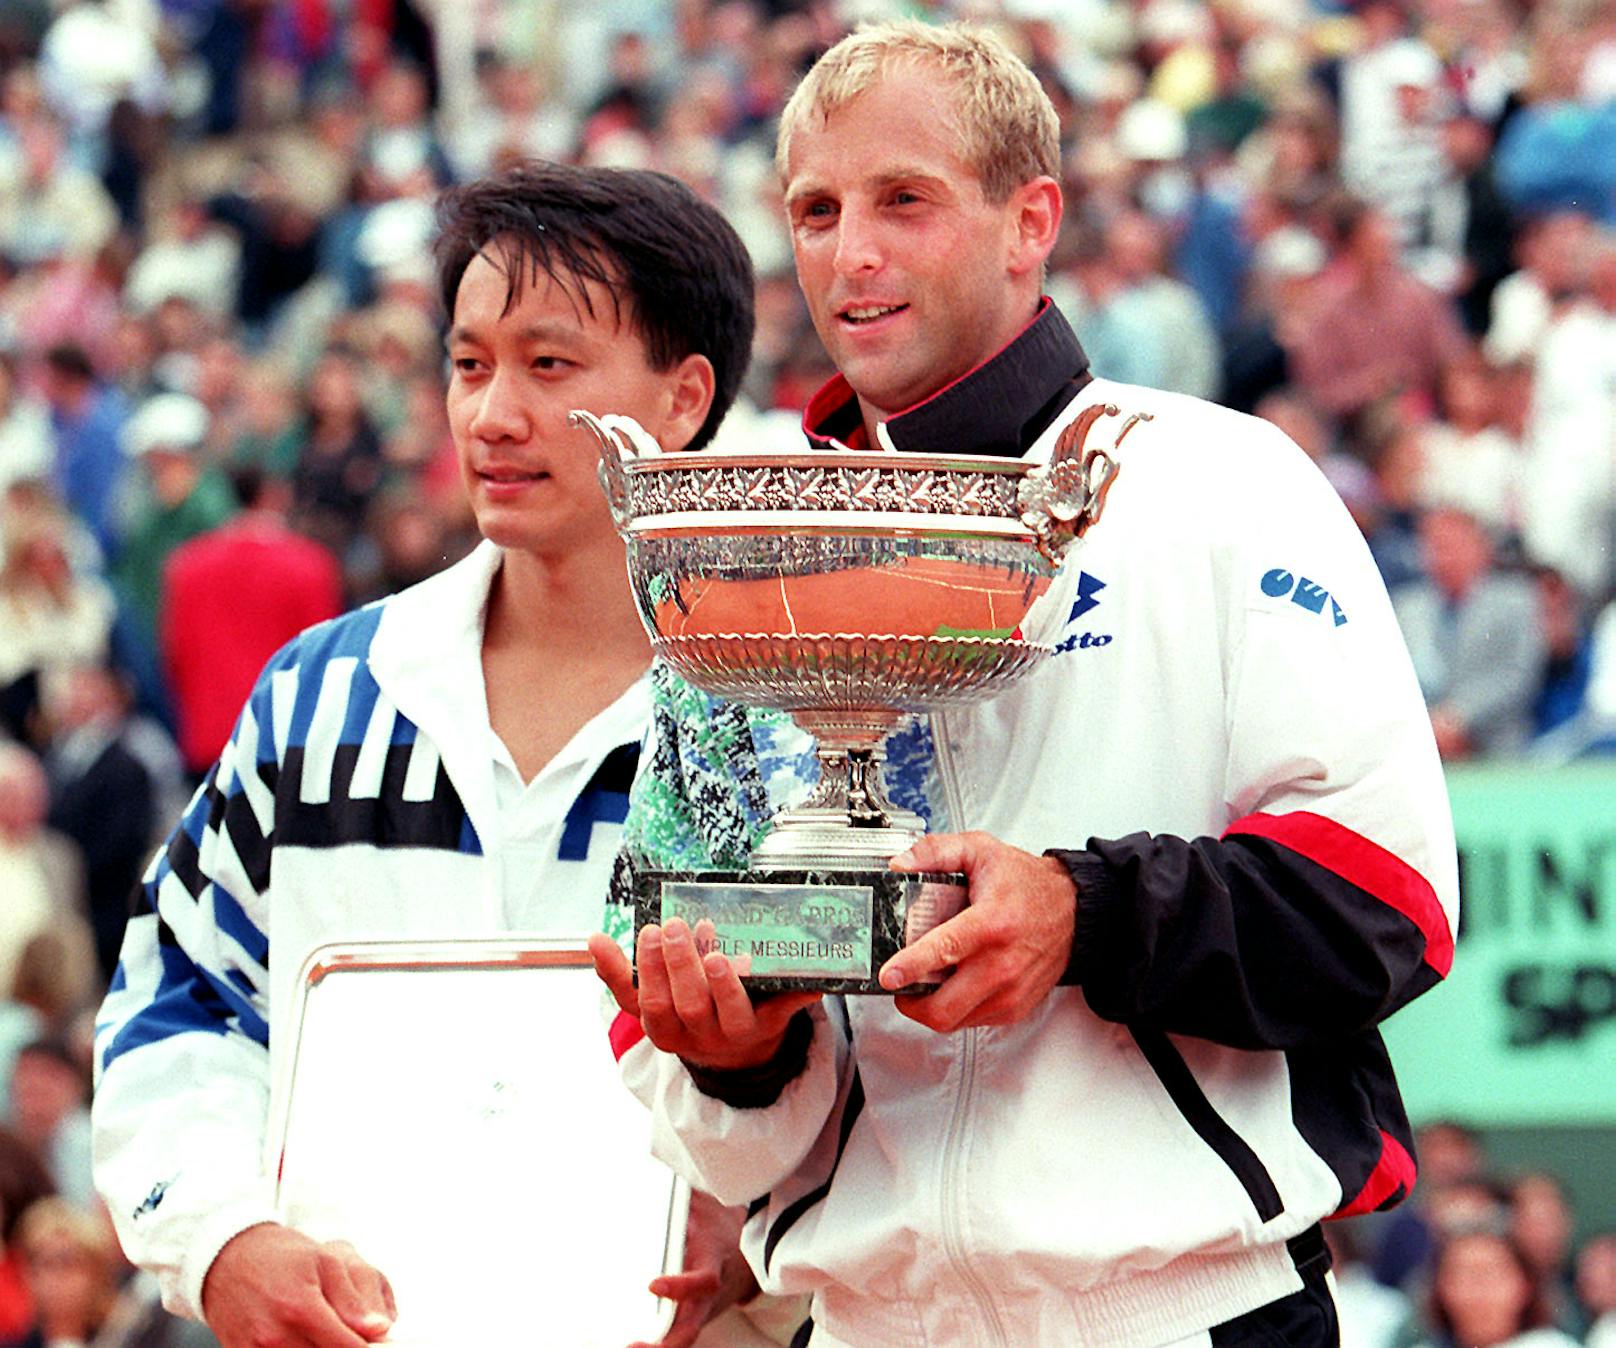 Im Finale bezwang Muster den US-Amerikaner Michael Chang. Der Sohn von taiwanischen Einwanderern hatte 1989 bereits die French Open gewonnen. Im Finale 1995 ließ ihm der Österreicher keine Chance. Muster siegte in drei Sätzen 7:5, 6:2 und 6:4.